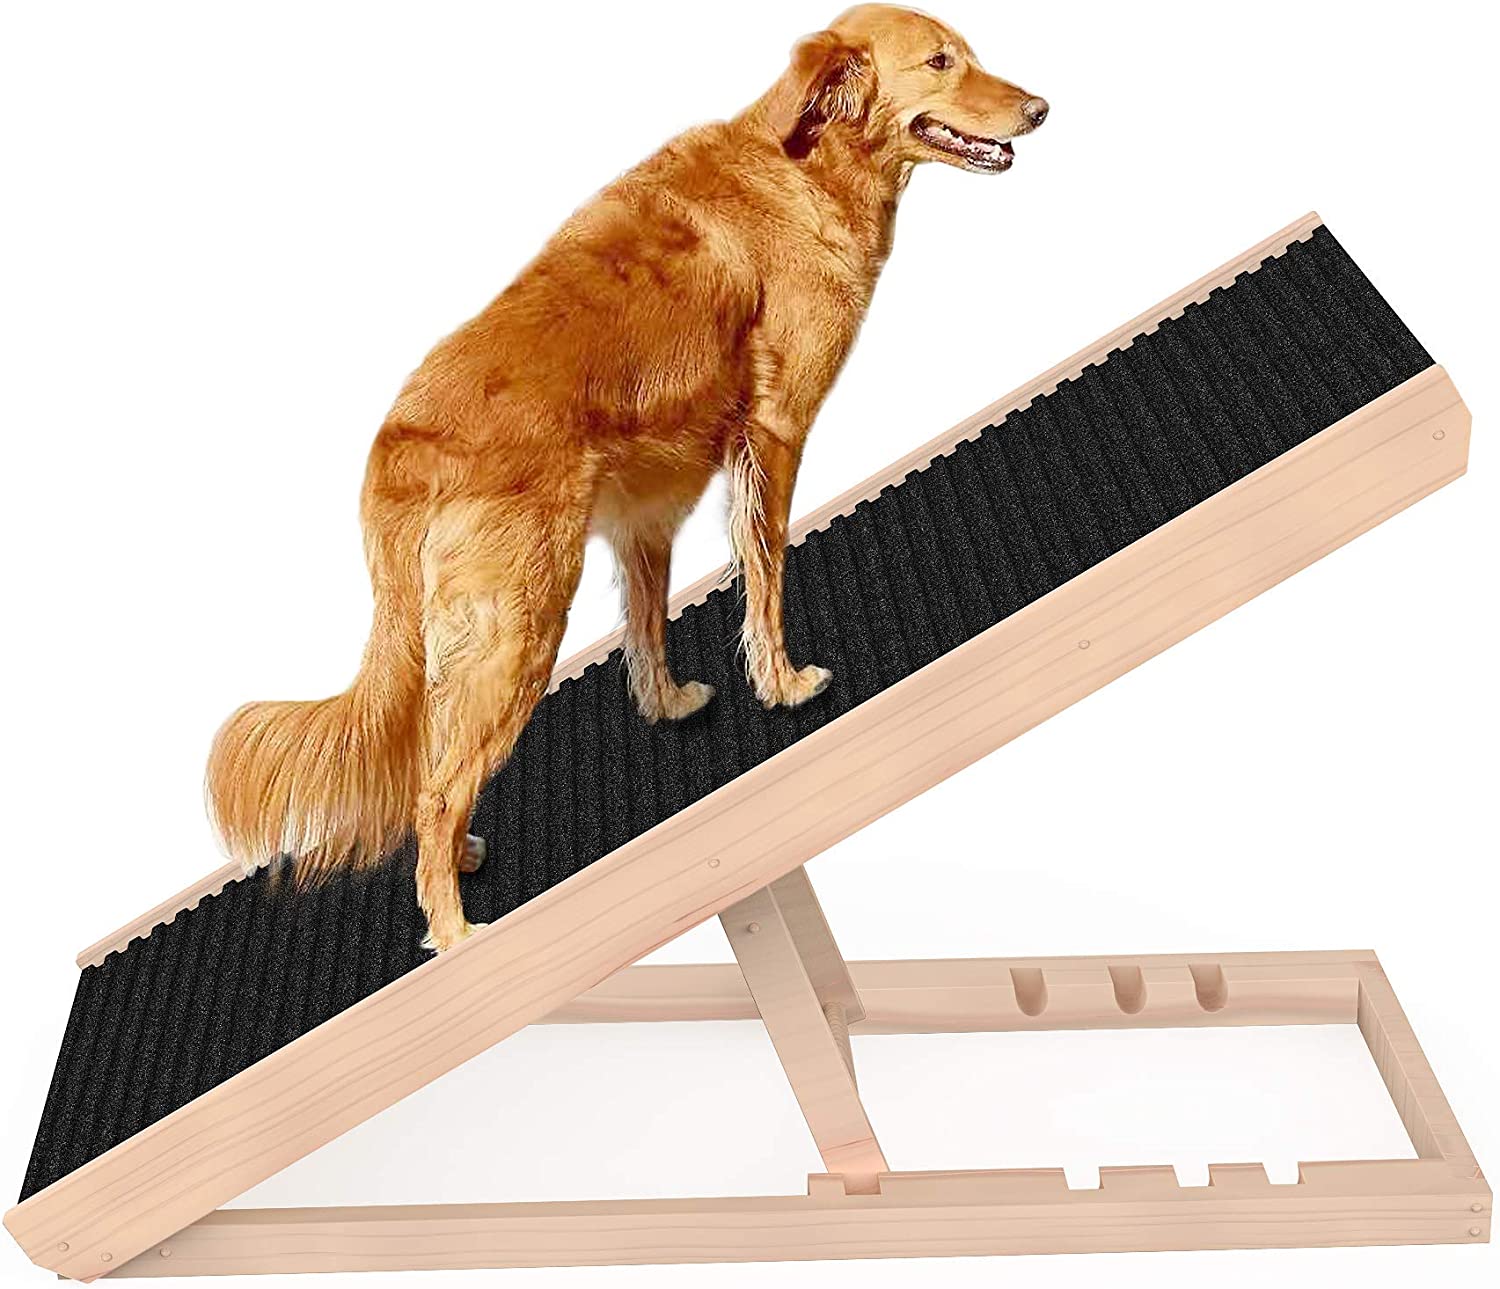 6. SASRL Adjustable Pet Ramp